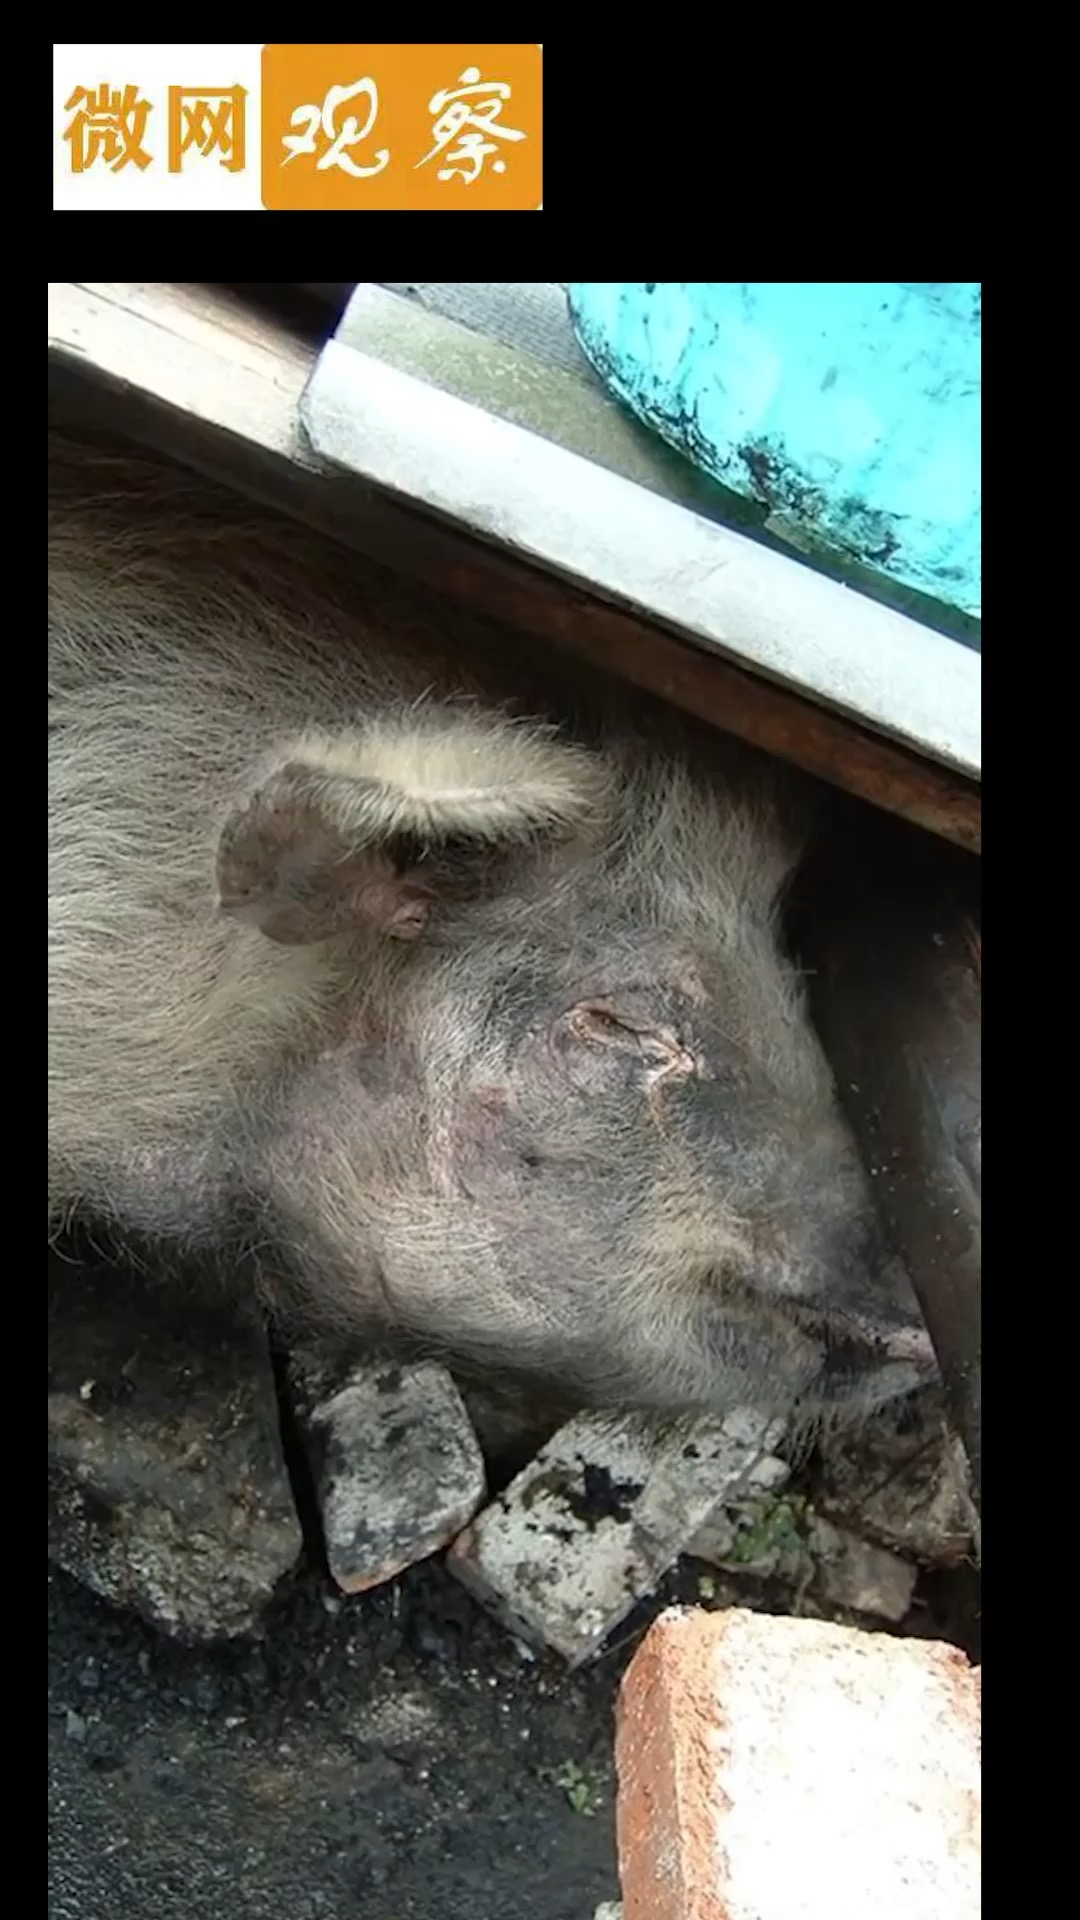 汶川地震活下来的猪坚强已进入生命最后时刻